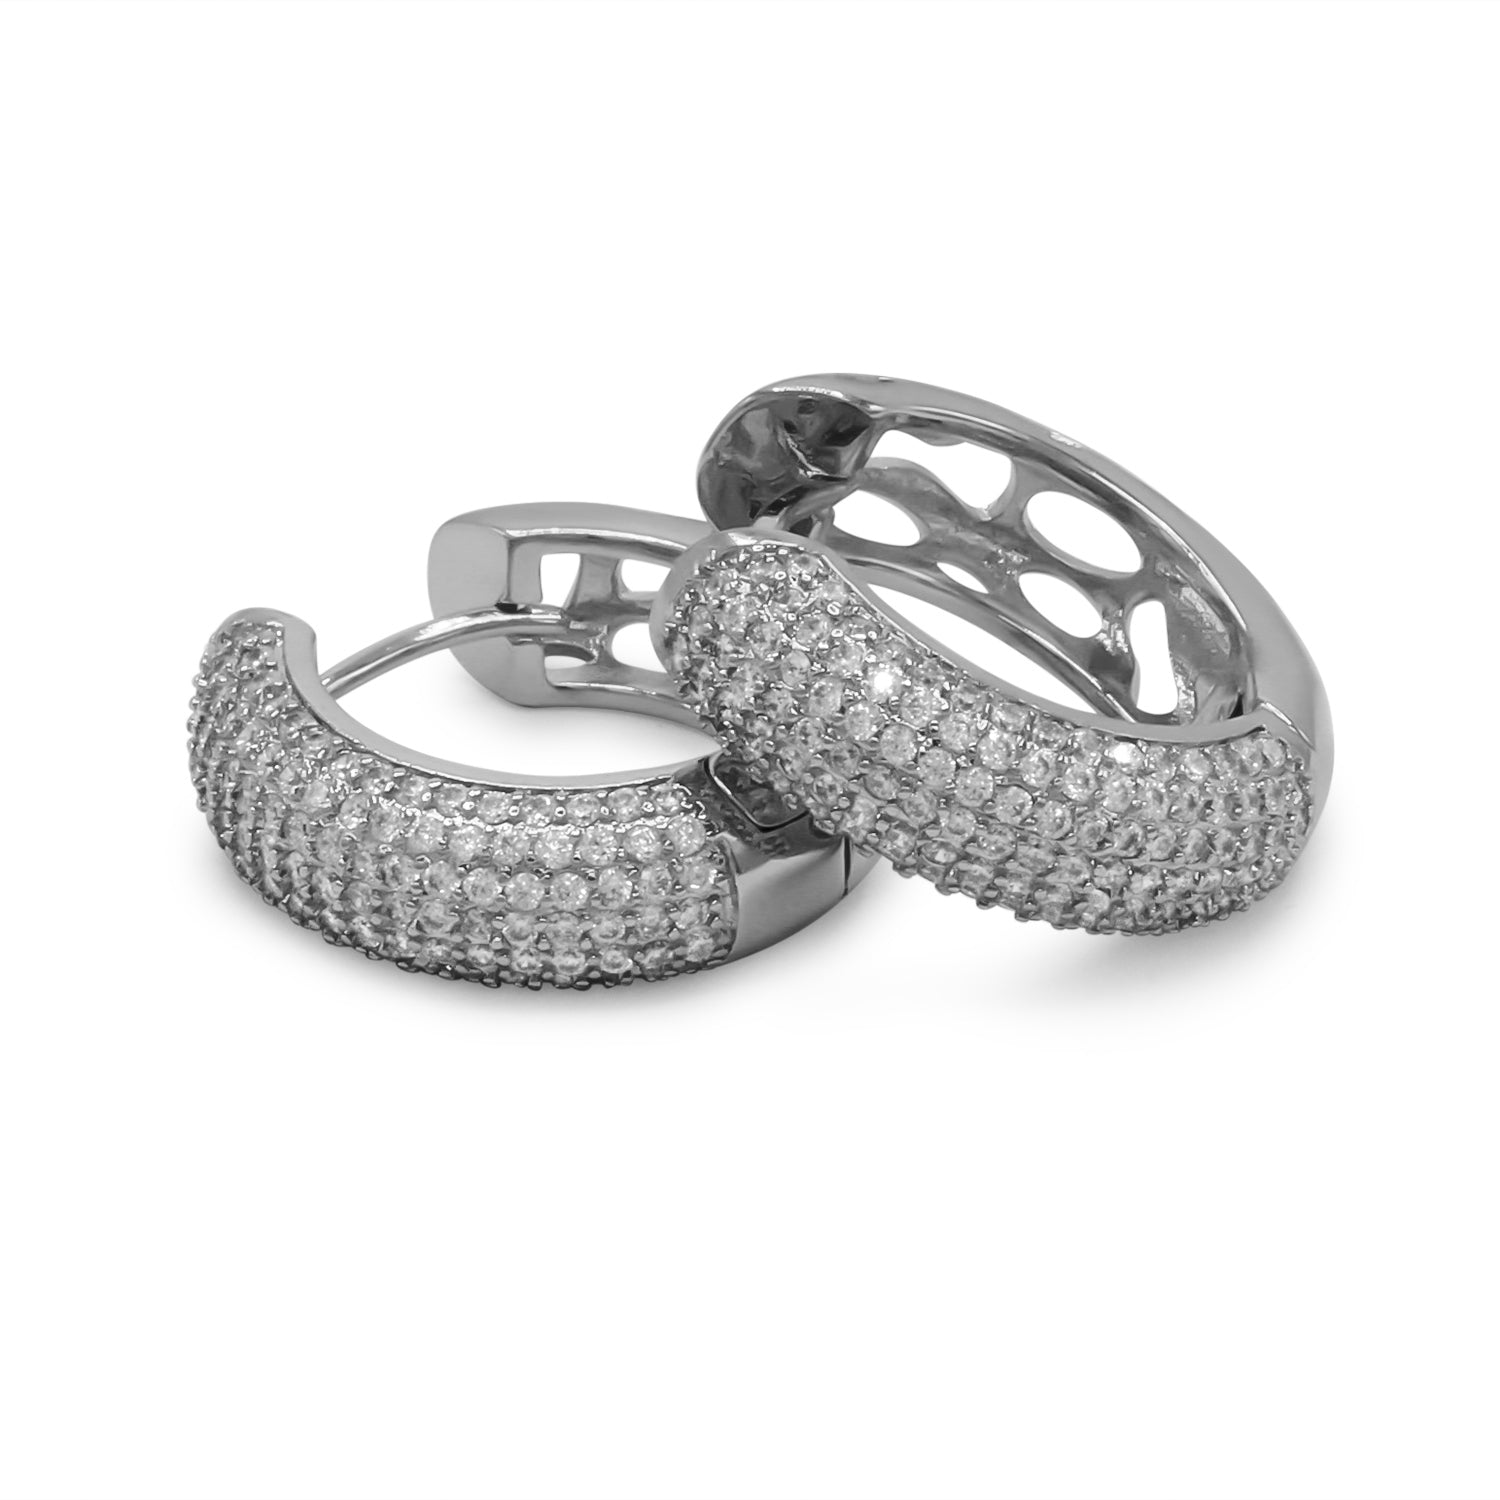 7 Row Cubic Zirconia Silver Huggie Hoop Earrings Stainless Steel Jewelry 7 mm